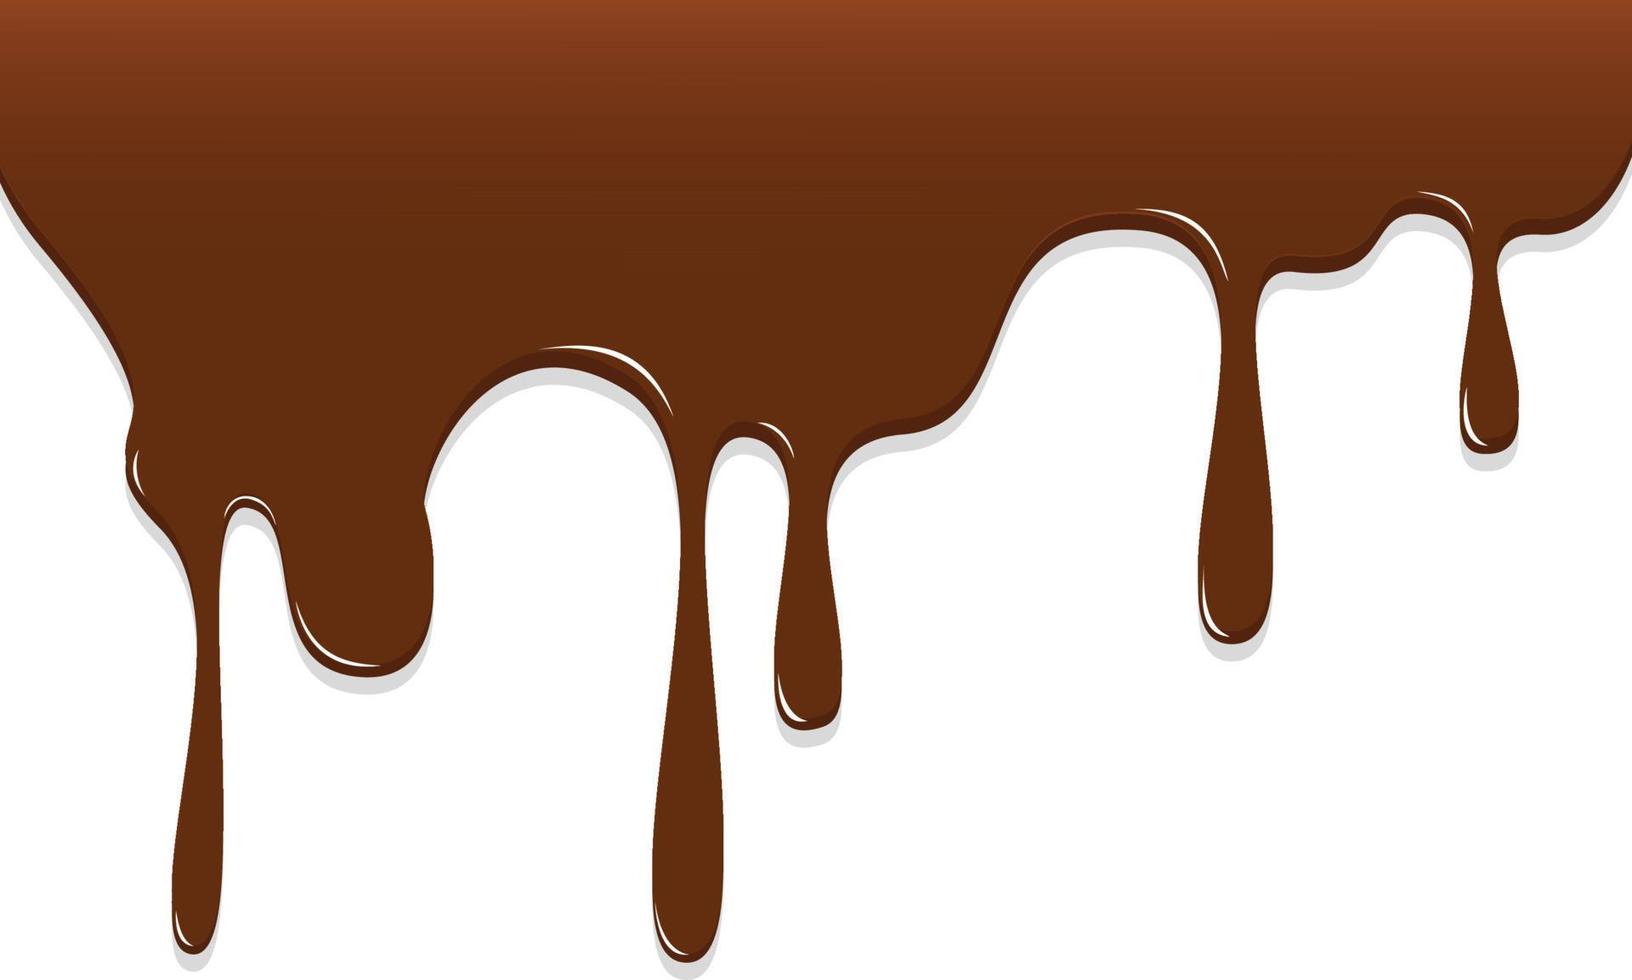 goteo de chocolate, ilustración de vector de fondo de chocolate